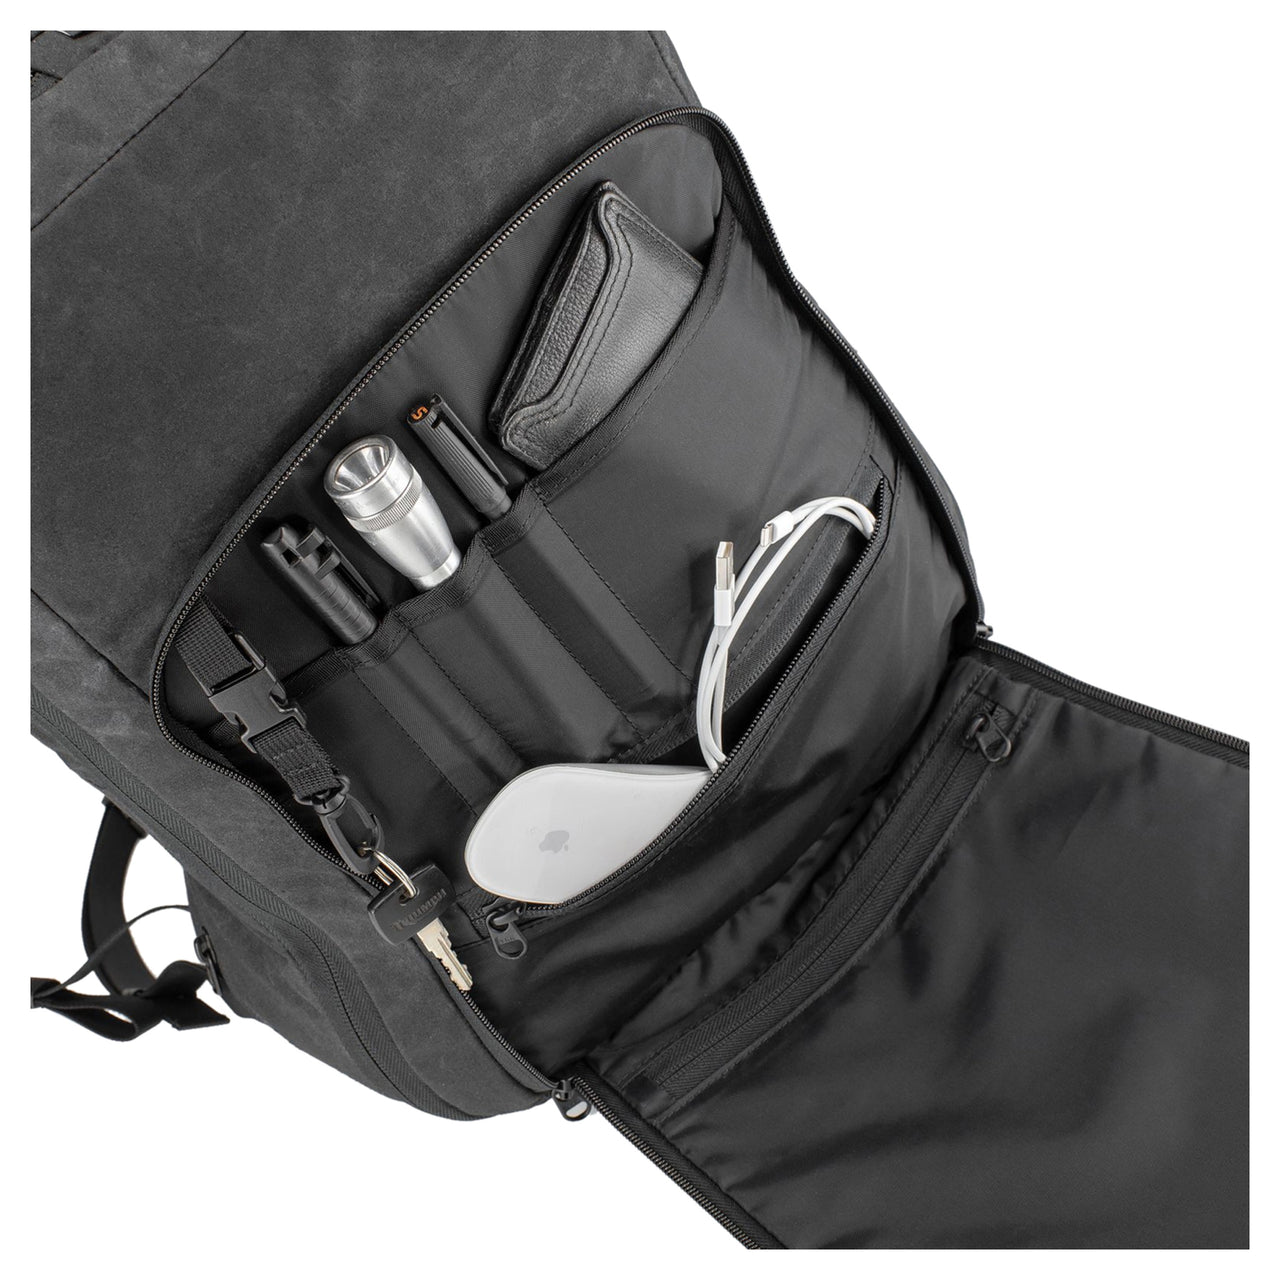 Kriega Roam 34 Backpack - Roland Sands Design